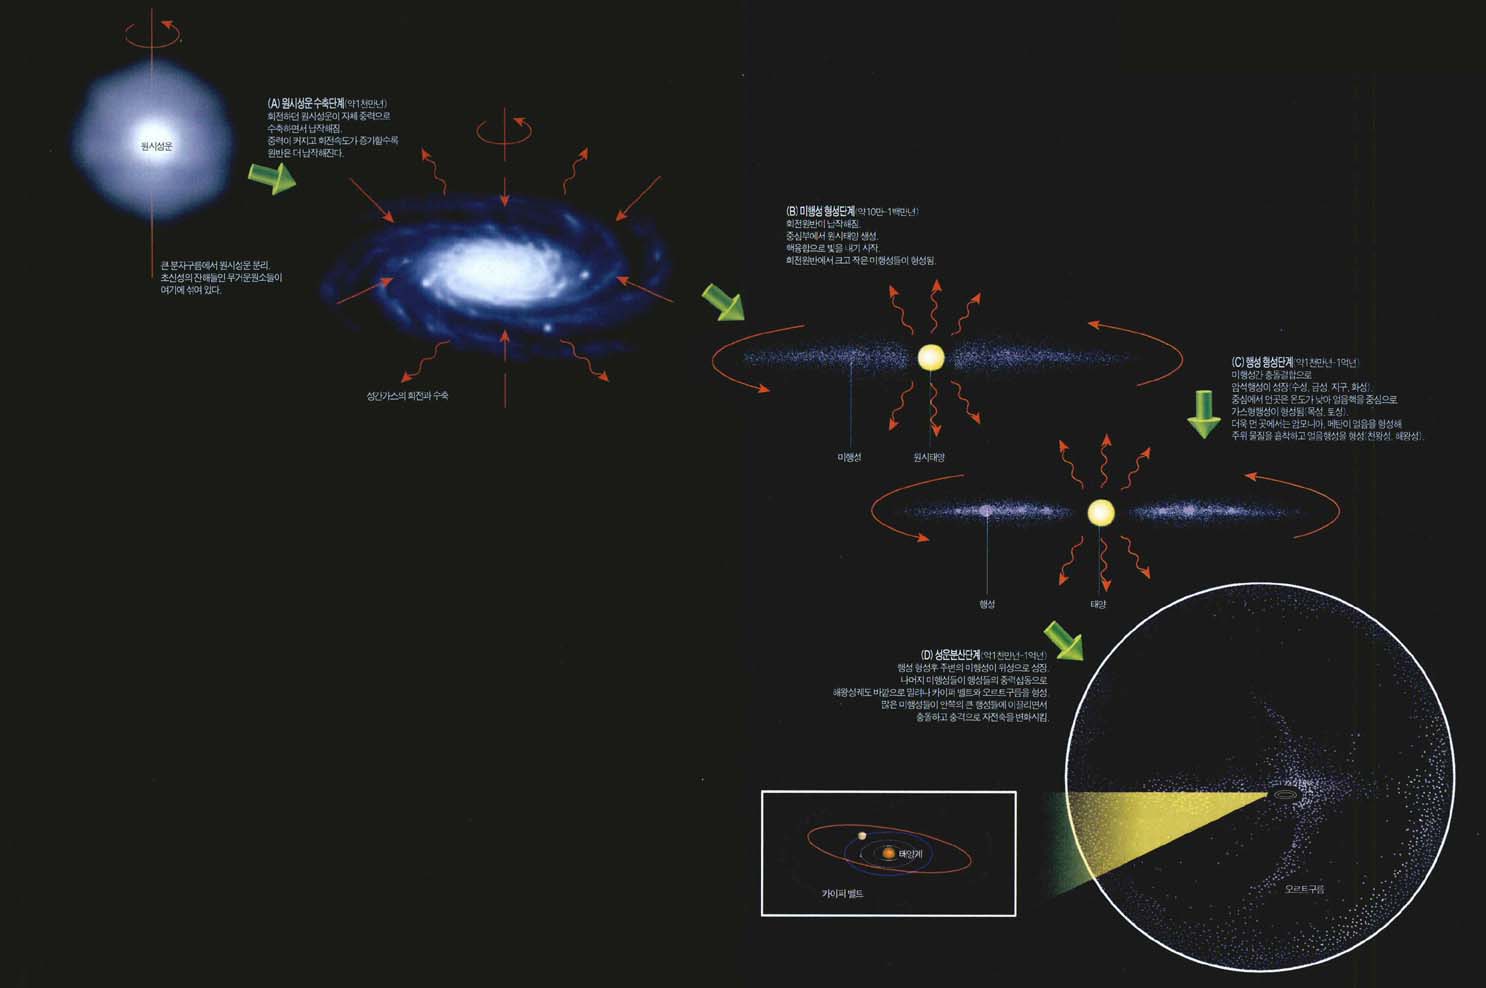 (그림2) 태양계의 형성과 구조^가스원반에서 태양과 함께 형성된 미행성들이 행성으로 성장했다. 중심에서 떨어진 거리에 따라 온도가 달라져 암석행성, 가스행성, 얼음행성이 다르게 형성됐다. 성장하지 못한 미행성들이 외곽으로 밀려나 카이퍼벨트와 오르트 구름을 만드는 것으로 생각된다.